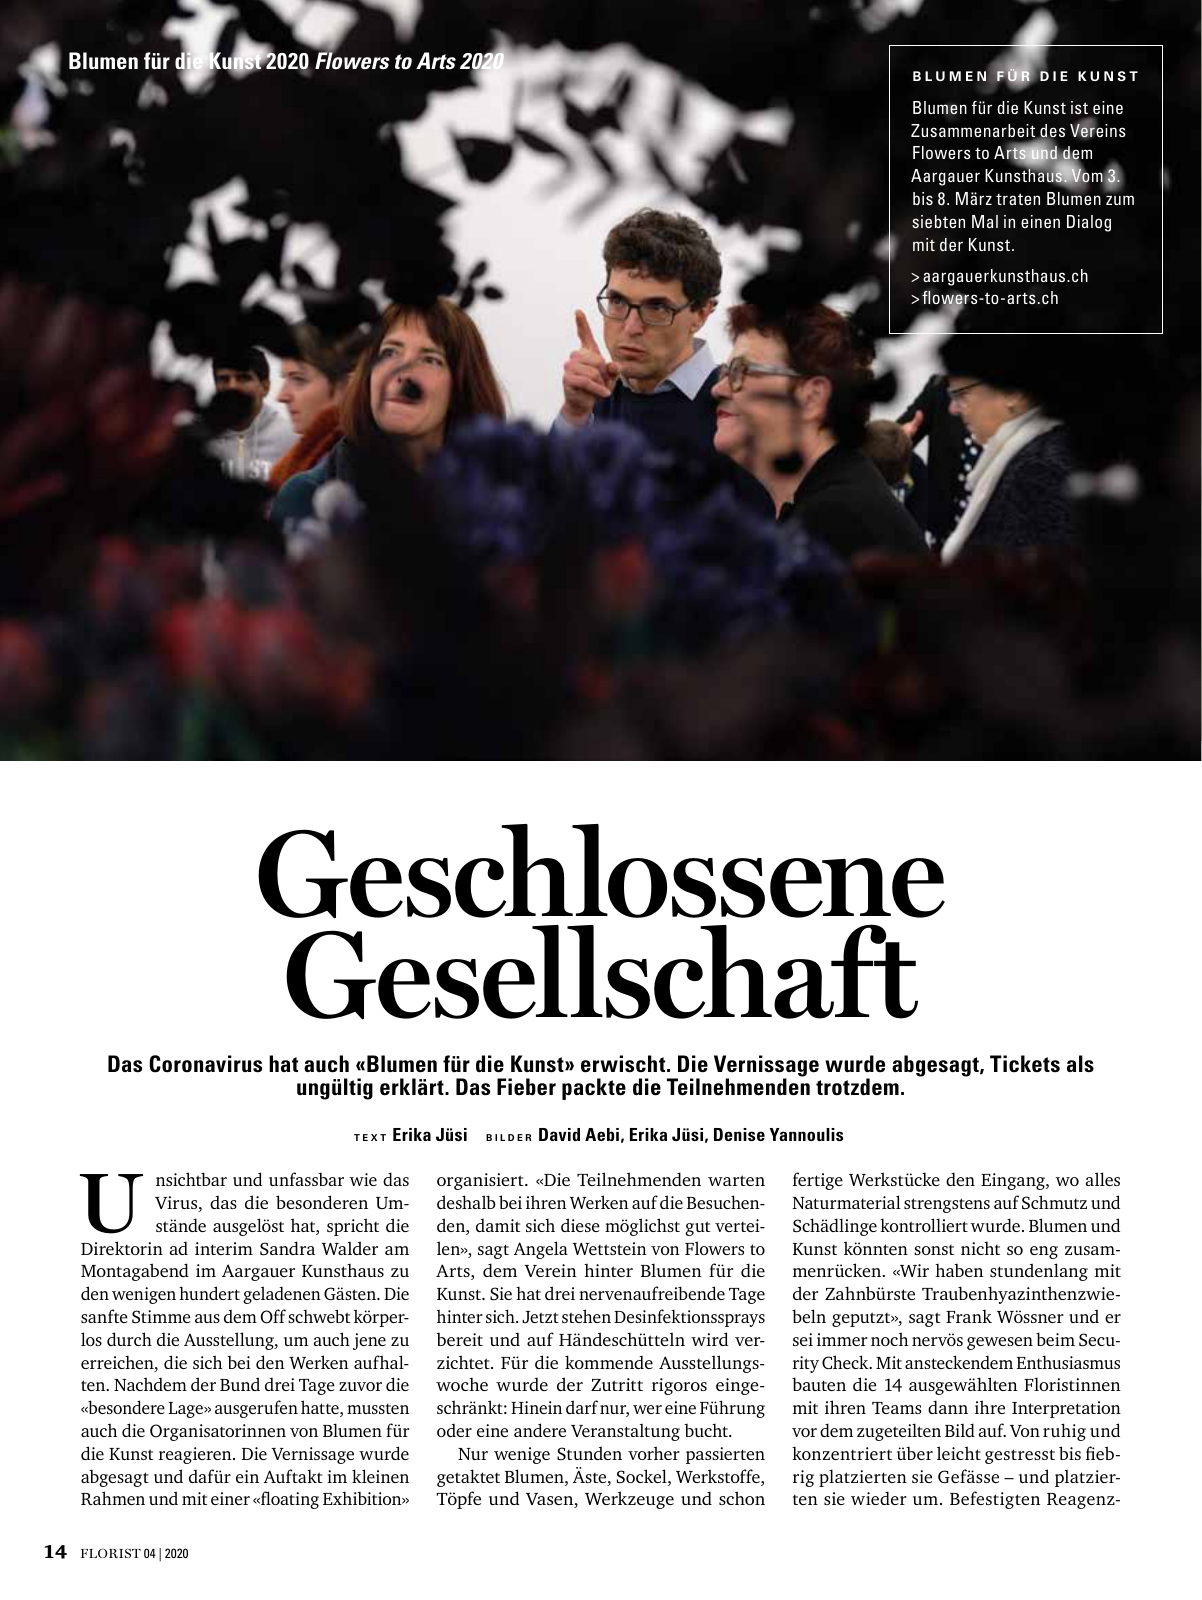 Vorschau Florist - Ausgabe April 2020 Seite 12